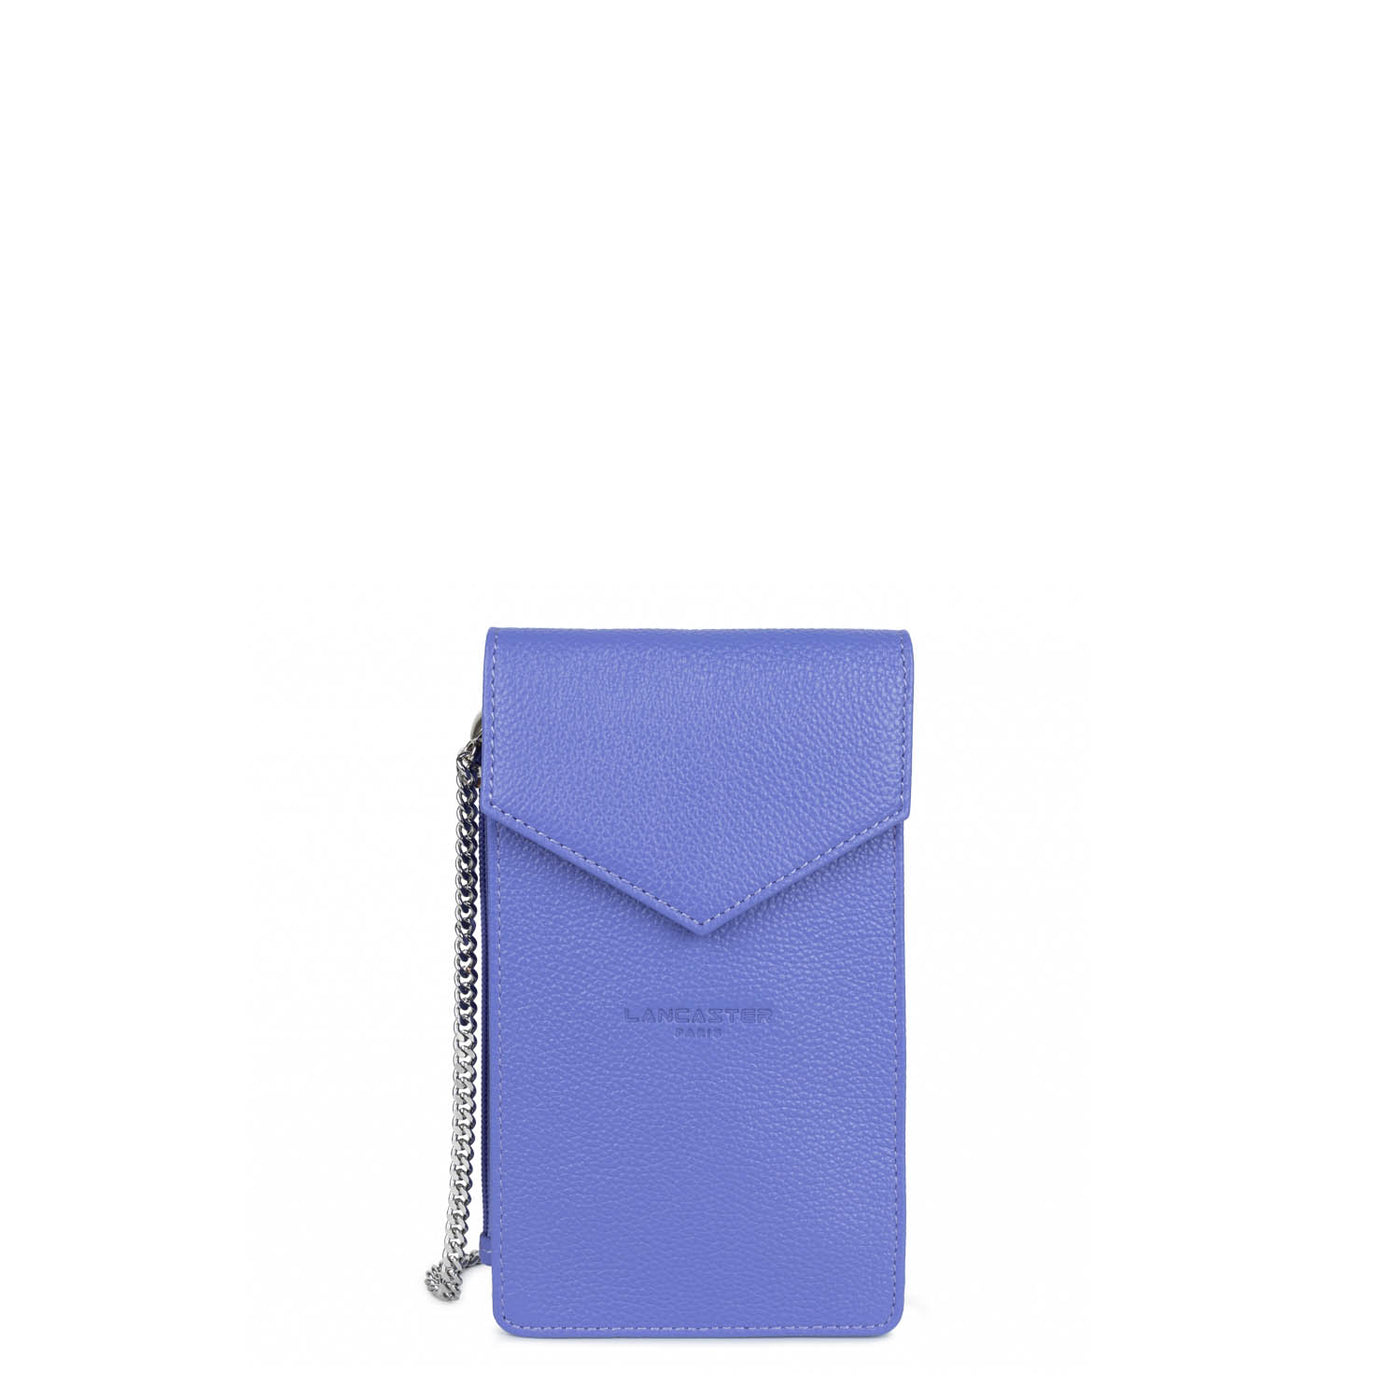 smartphone holder - foulonné pm #couleur_bleuette